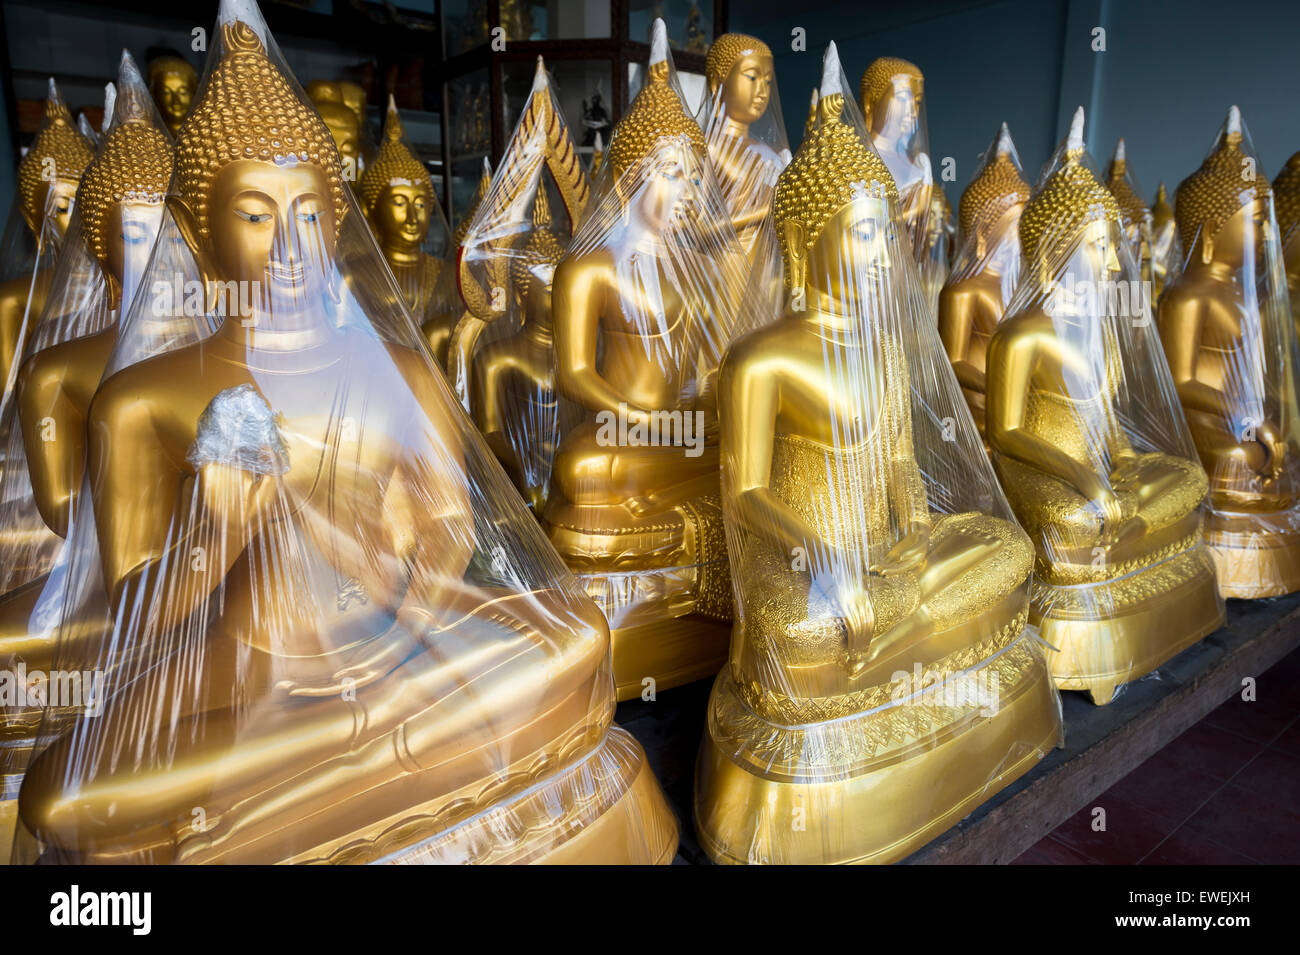 Rangées de bouddhas assis d'or enveloppé dans du plastique dans un magasin spécialisé dans les fournitures pour les temples bouddhistes de Bangkok, Thaïlande Banque D'Images